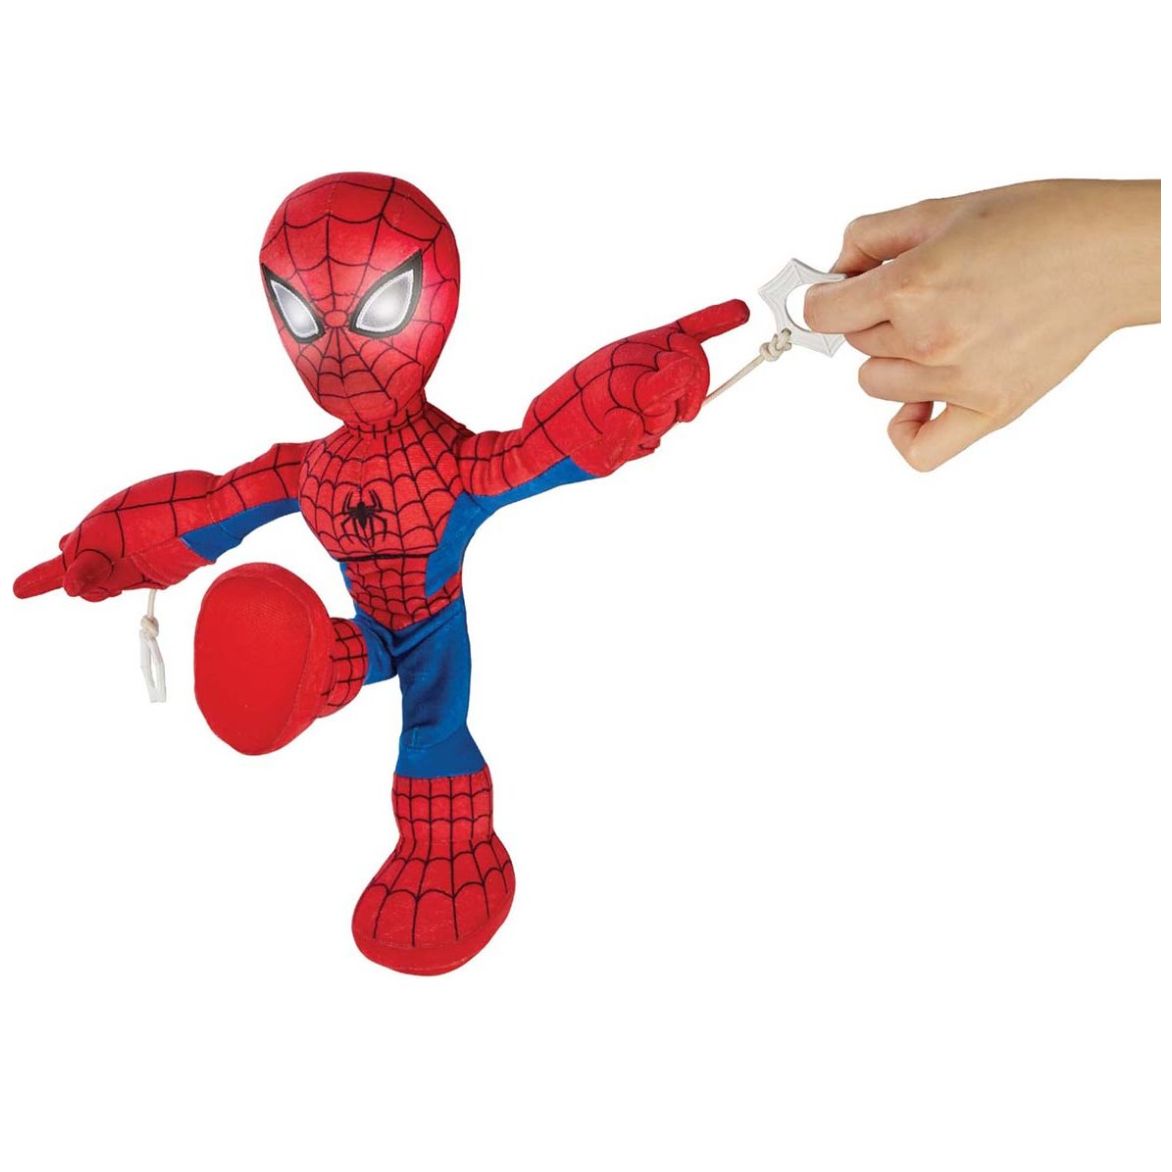  Marvel Disney Store - Juguete de peluche suave oficial de  Spider-Man, figura de peluche de 10 pulgadas, coleccionable perfecto y  regalo para fanáticos y niños de Spider-Man : Juguetes y Juegos